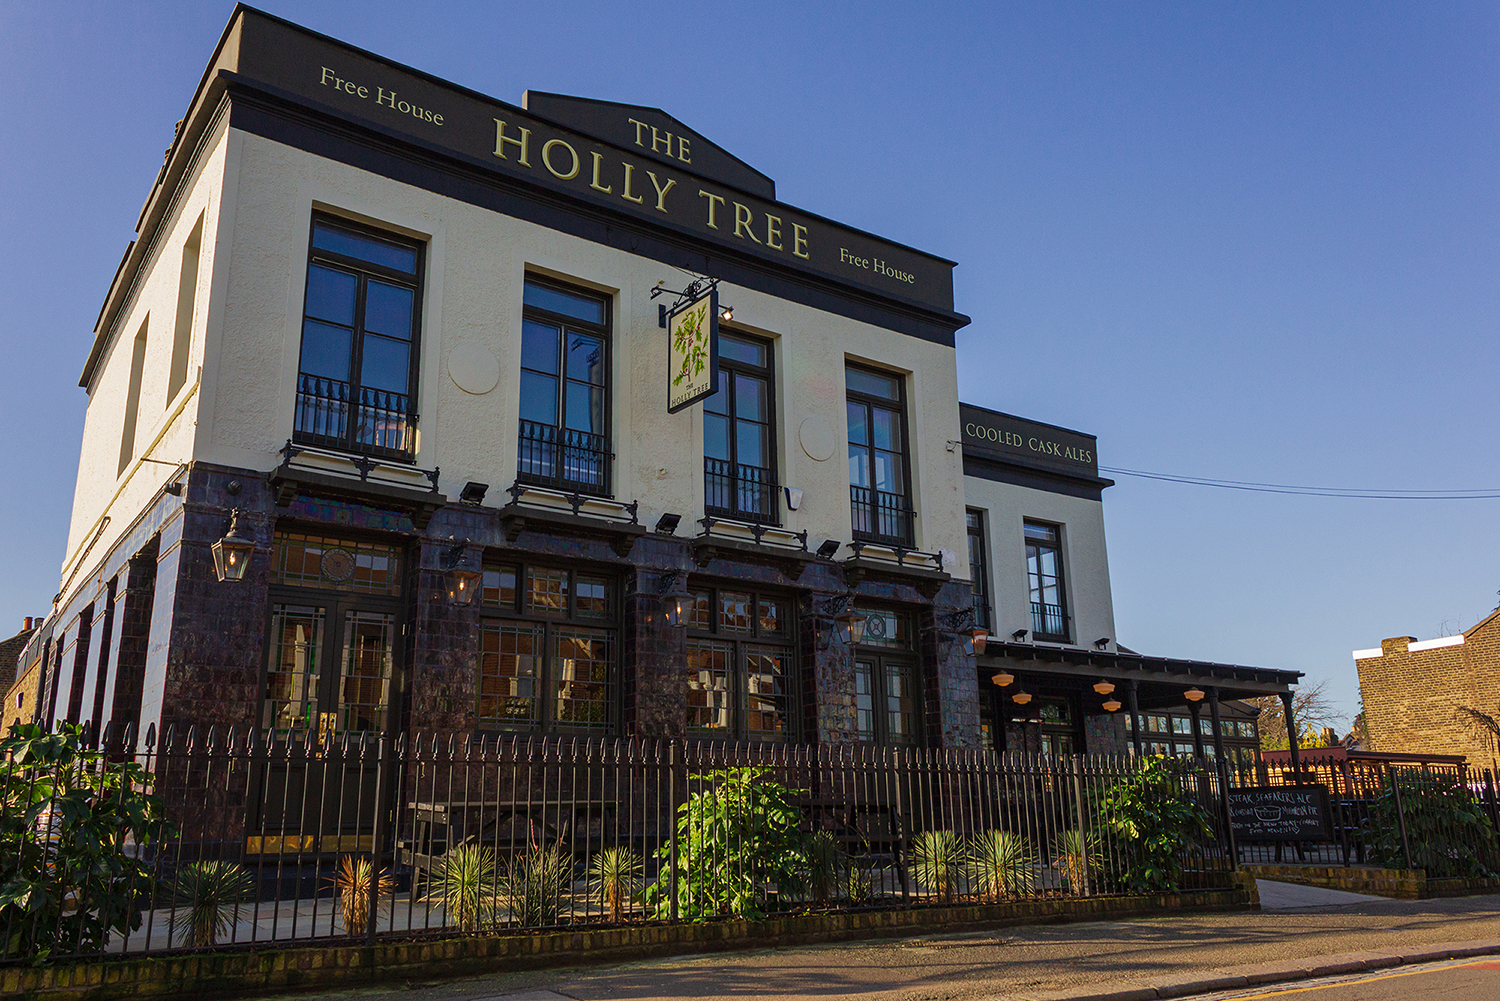 The Holly Tree Pub